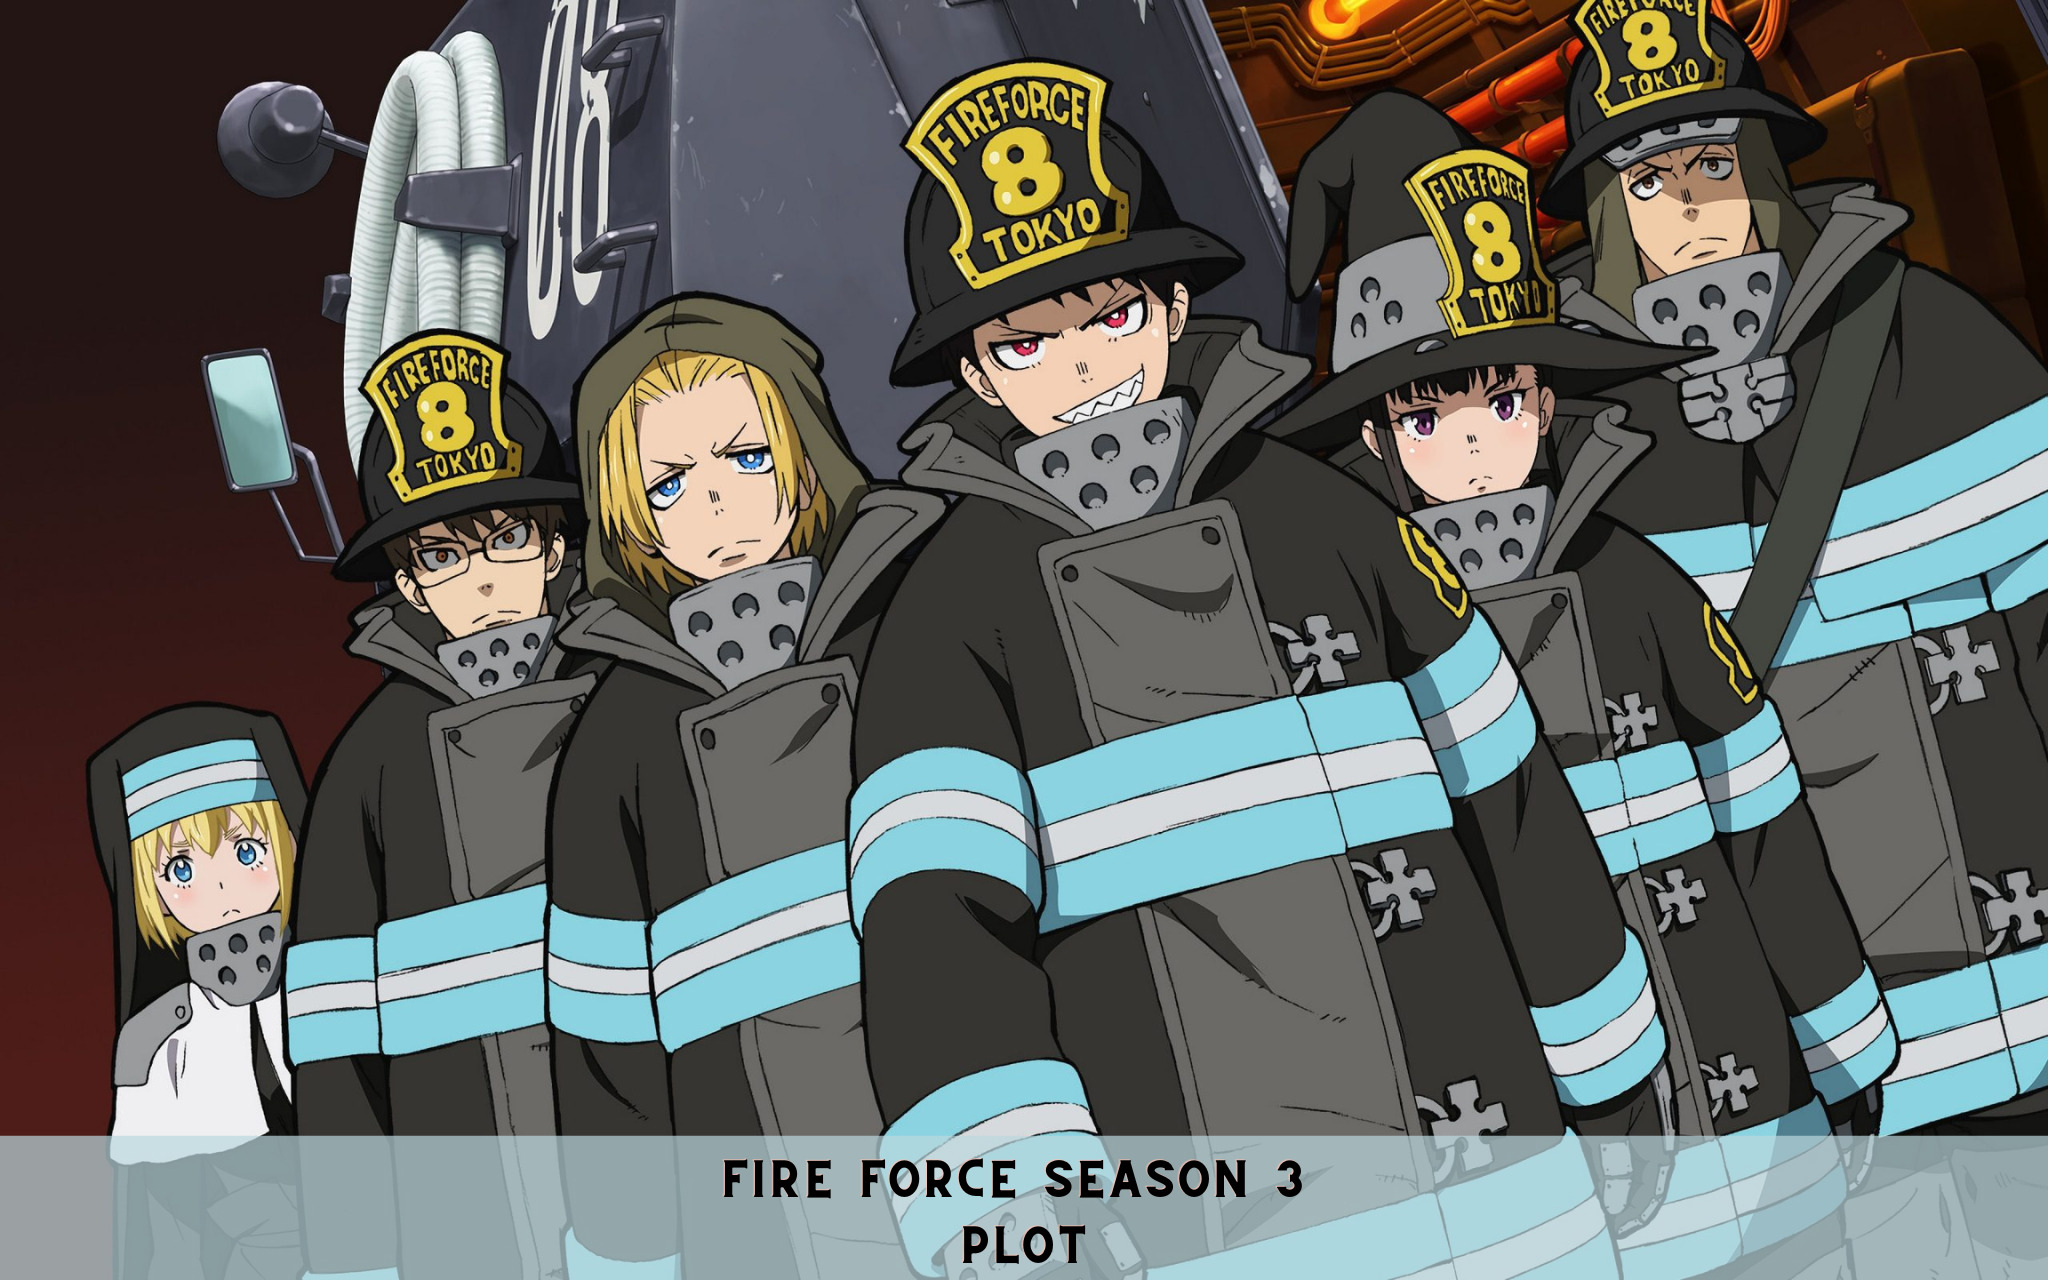 Fire Force Season 3 Plot